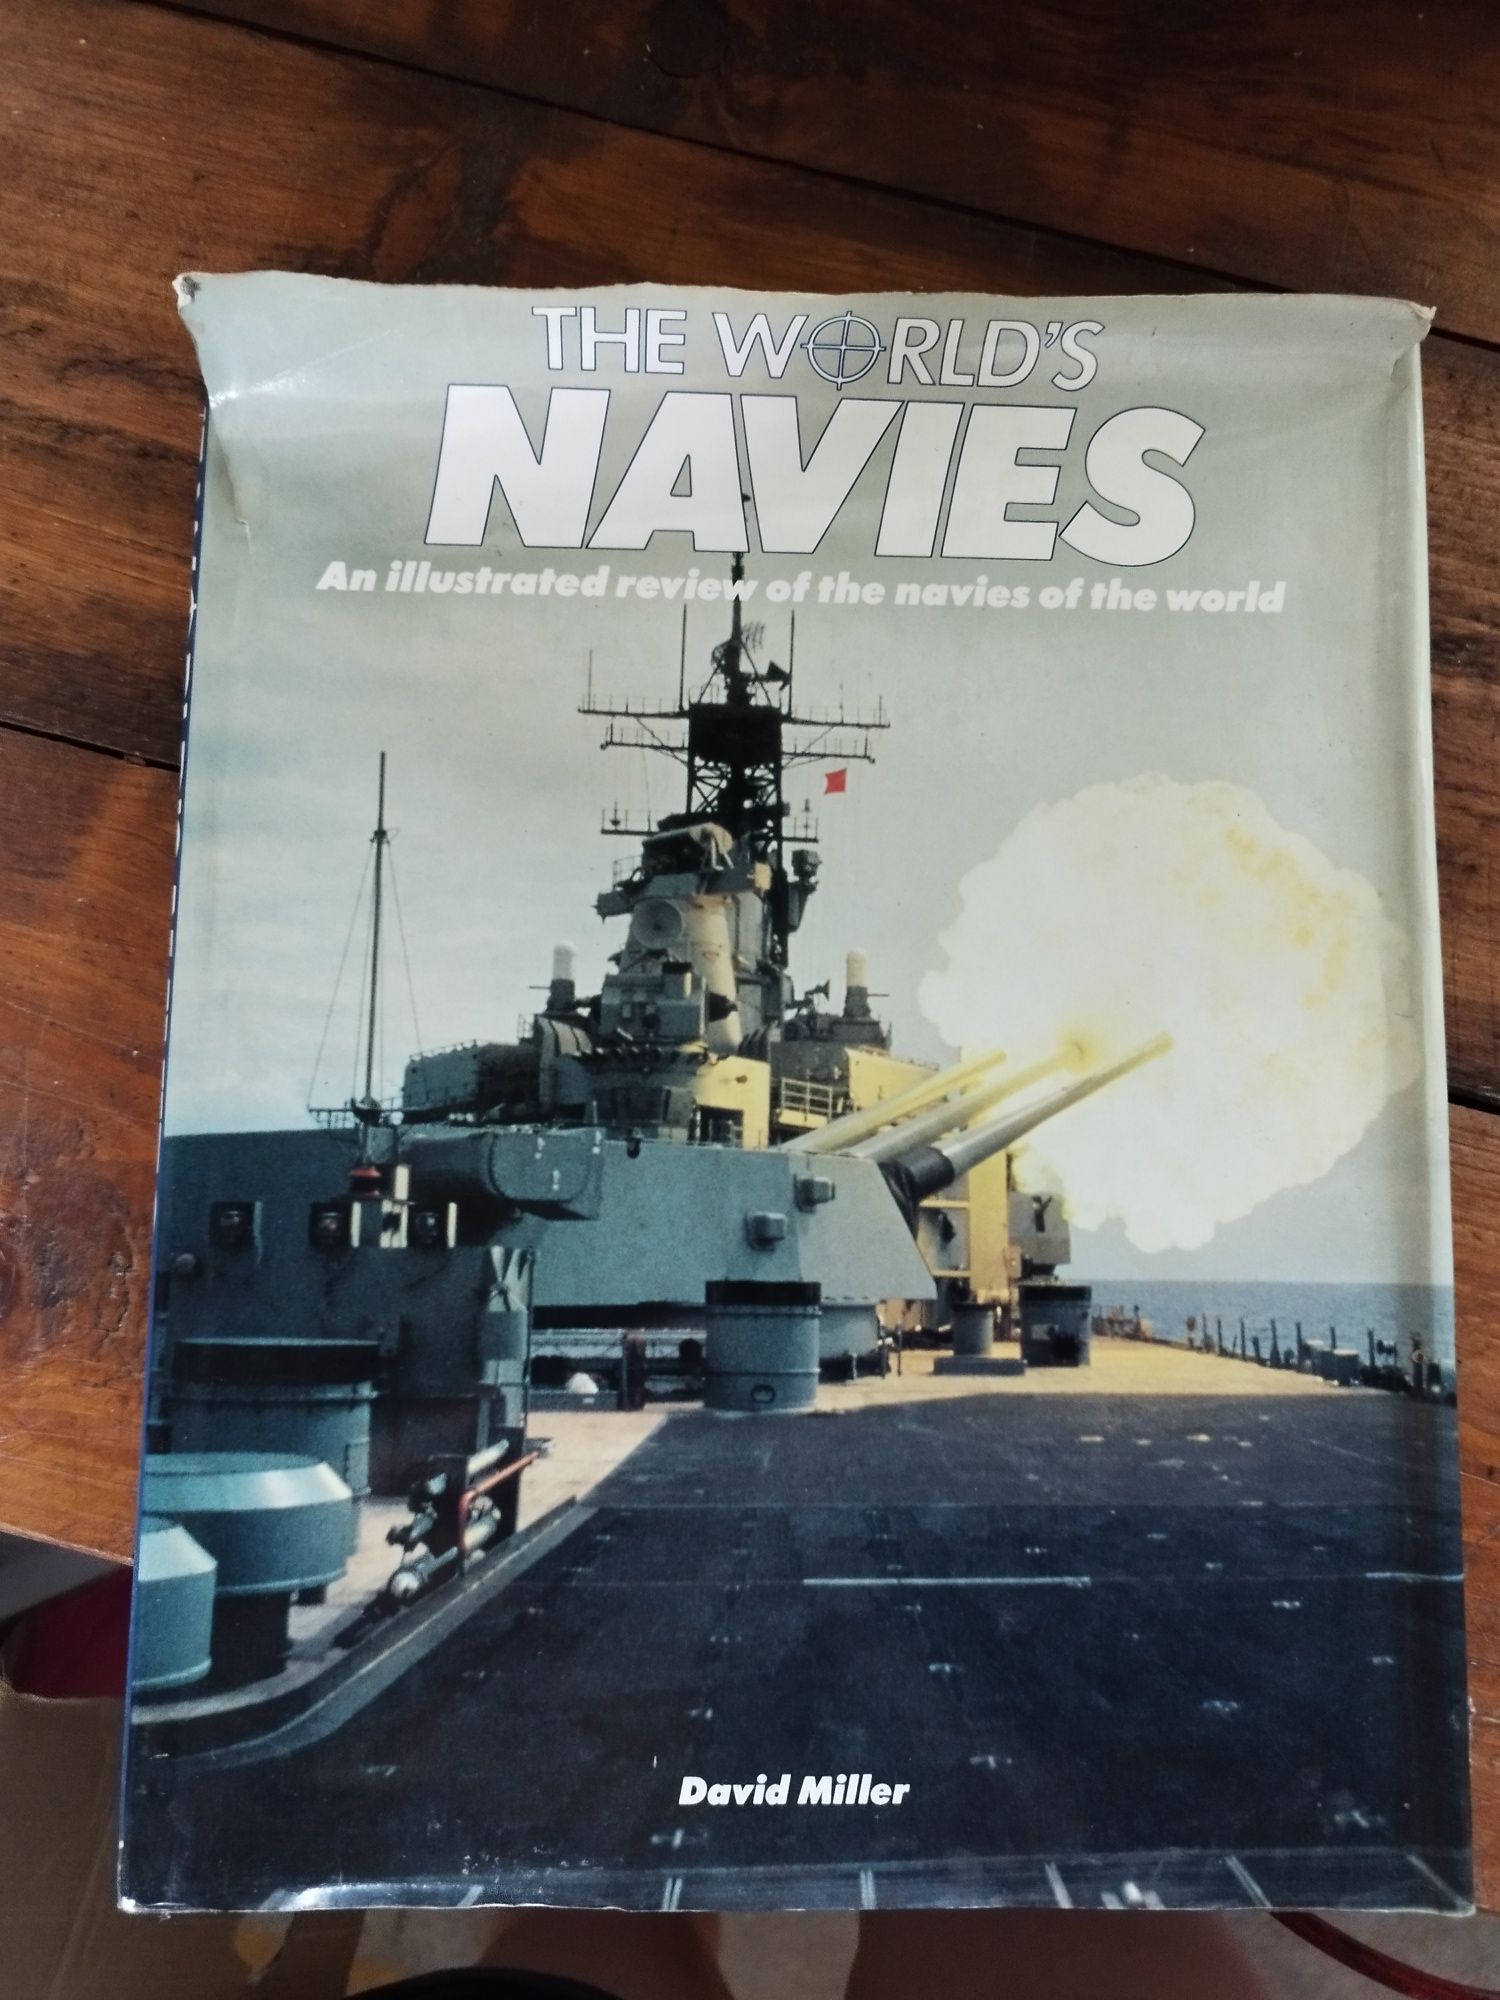 The world's navies